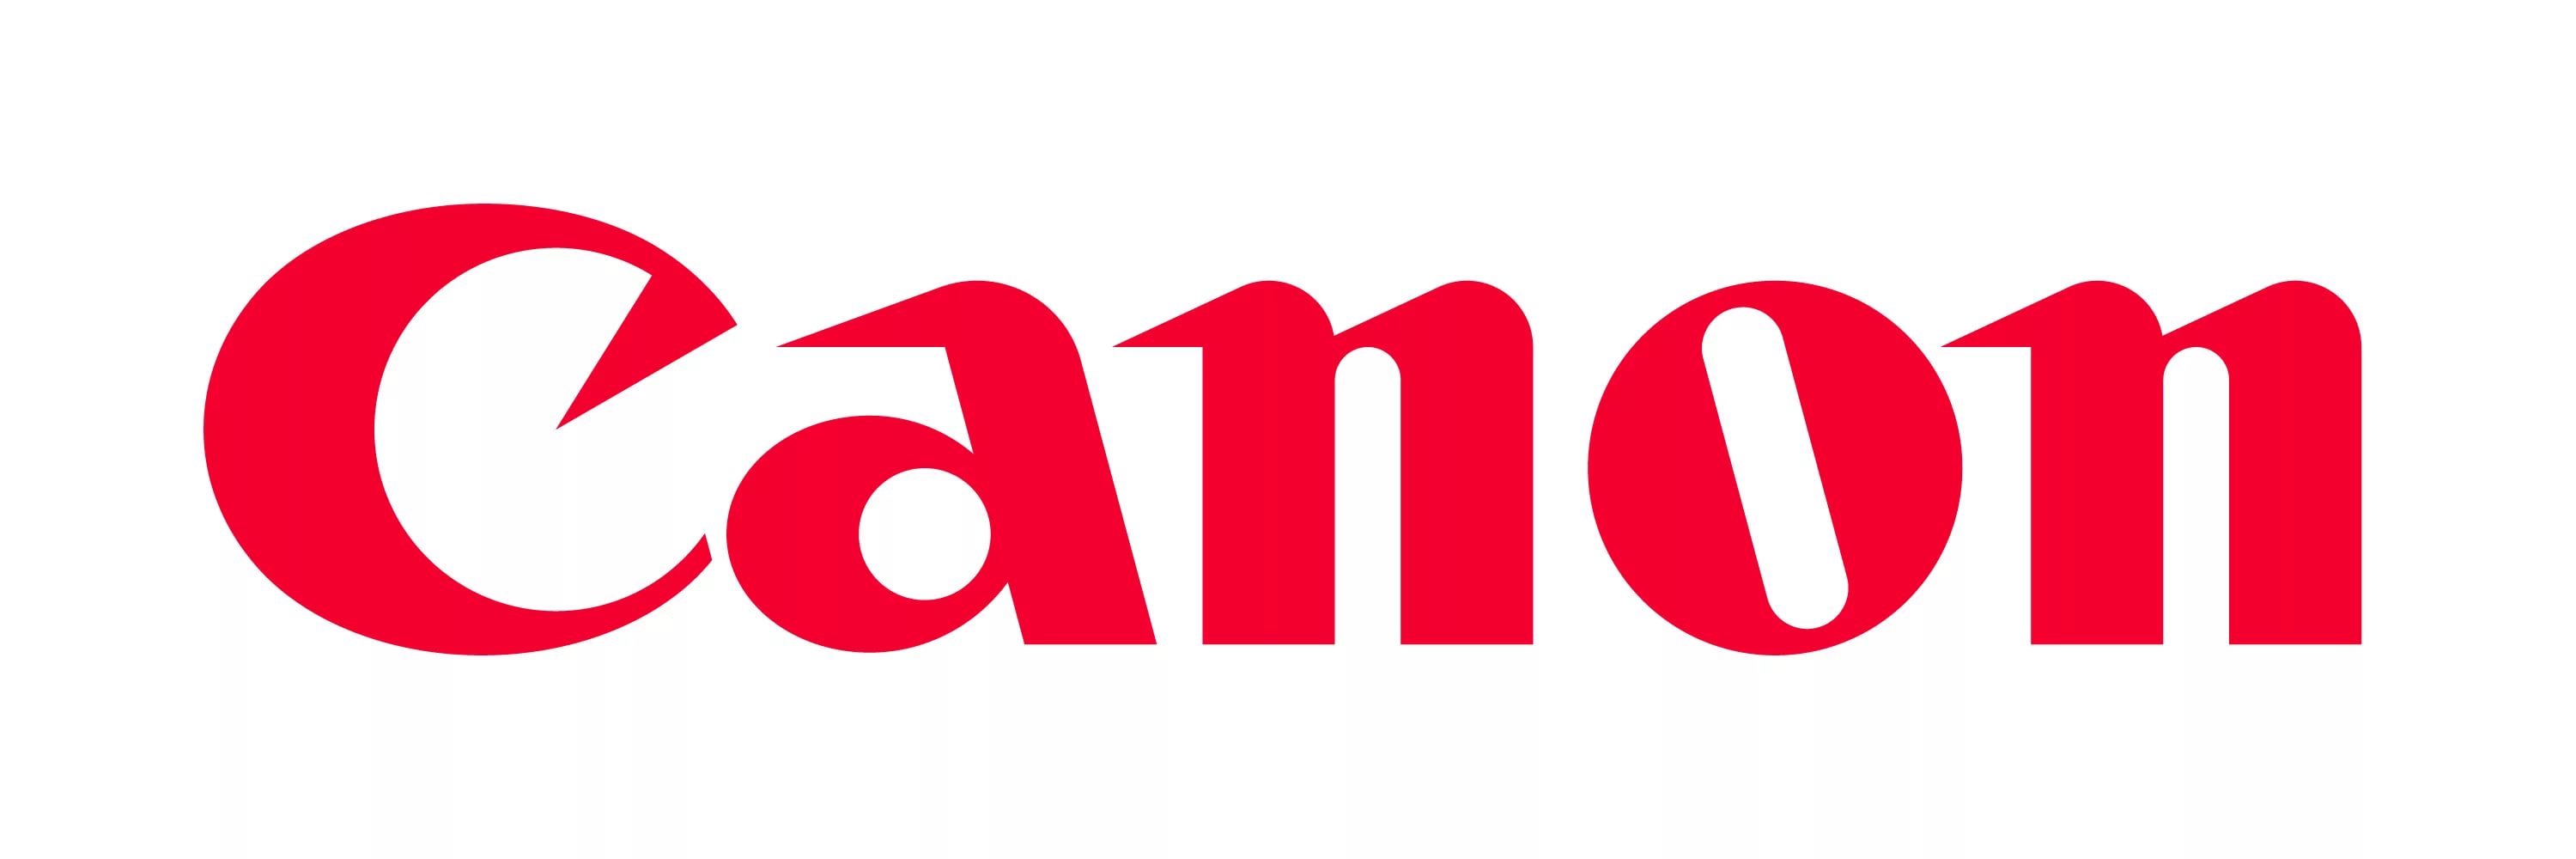 Логотип Canon (Кэнон)